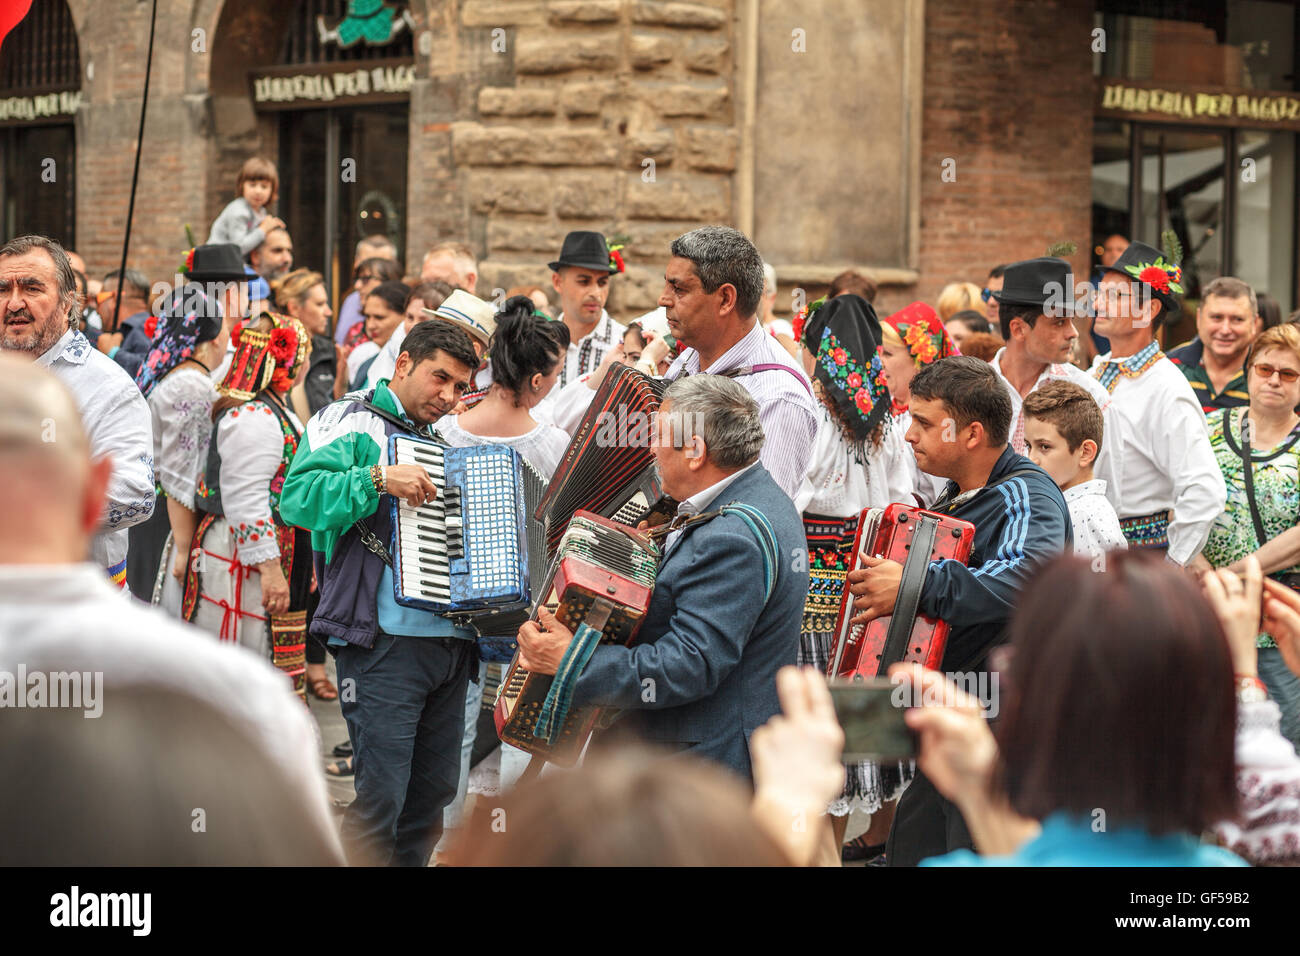 Musiciens accordéon chant sur la Journée internationale de romanian chemisier ou Ia 'jour' Banque D'Images